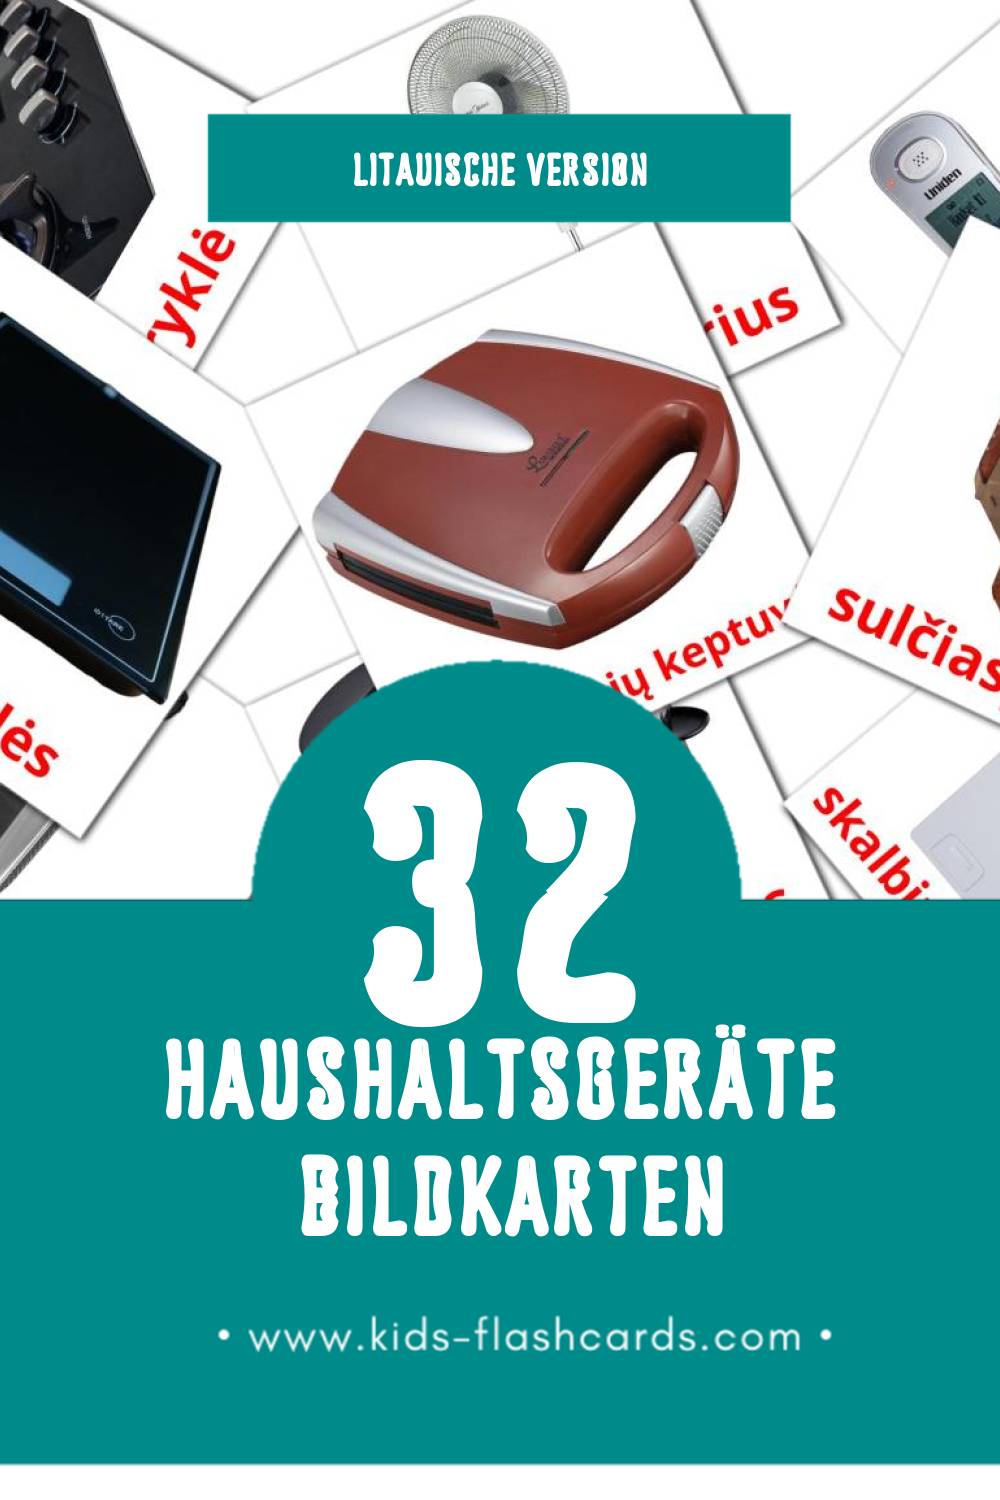 Visual Buitiniai prietaisai Flashcards für Kleinkinder (32 Karten in Litauisch)